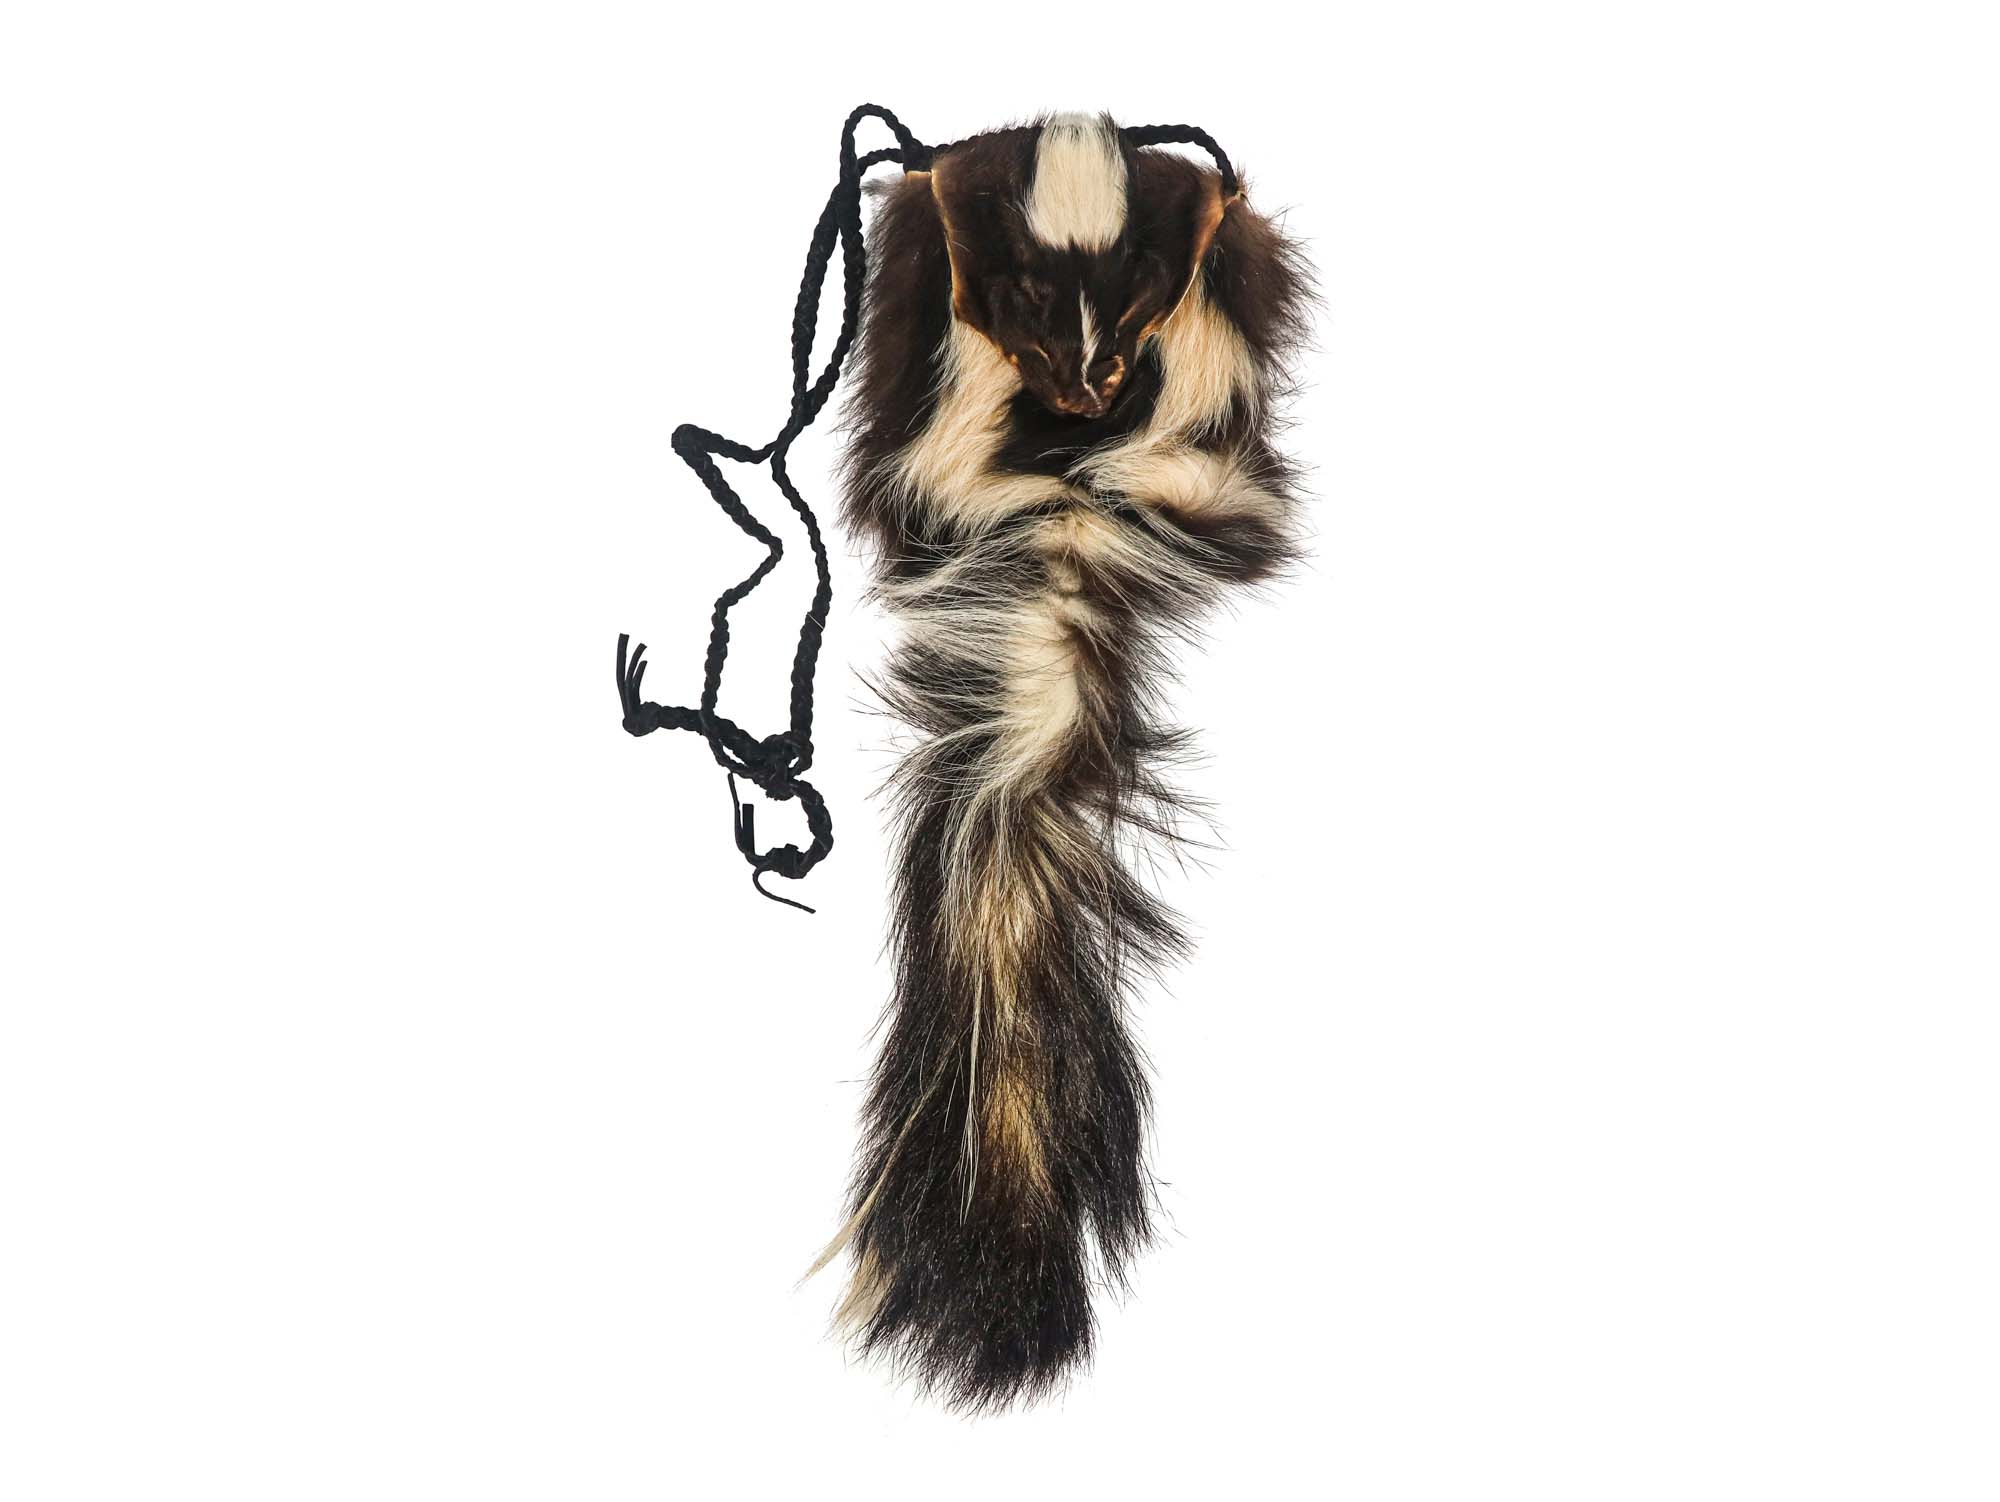 Deluxe Skunk Bag: Gallery Item skunk bags